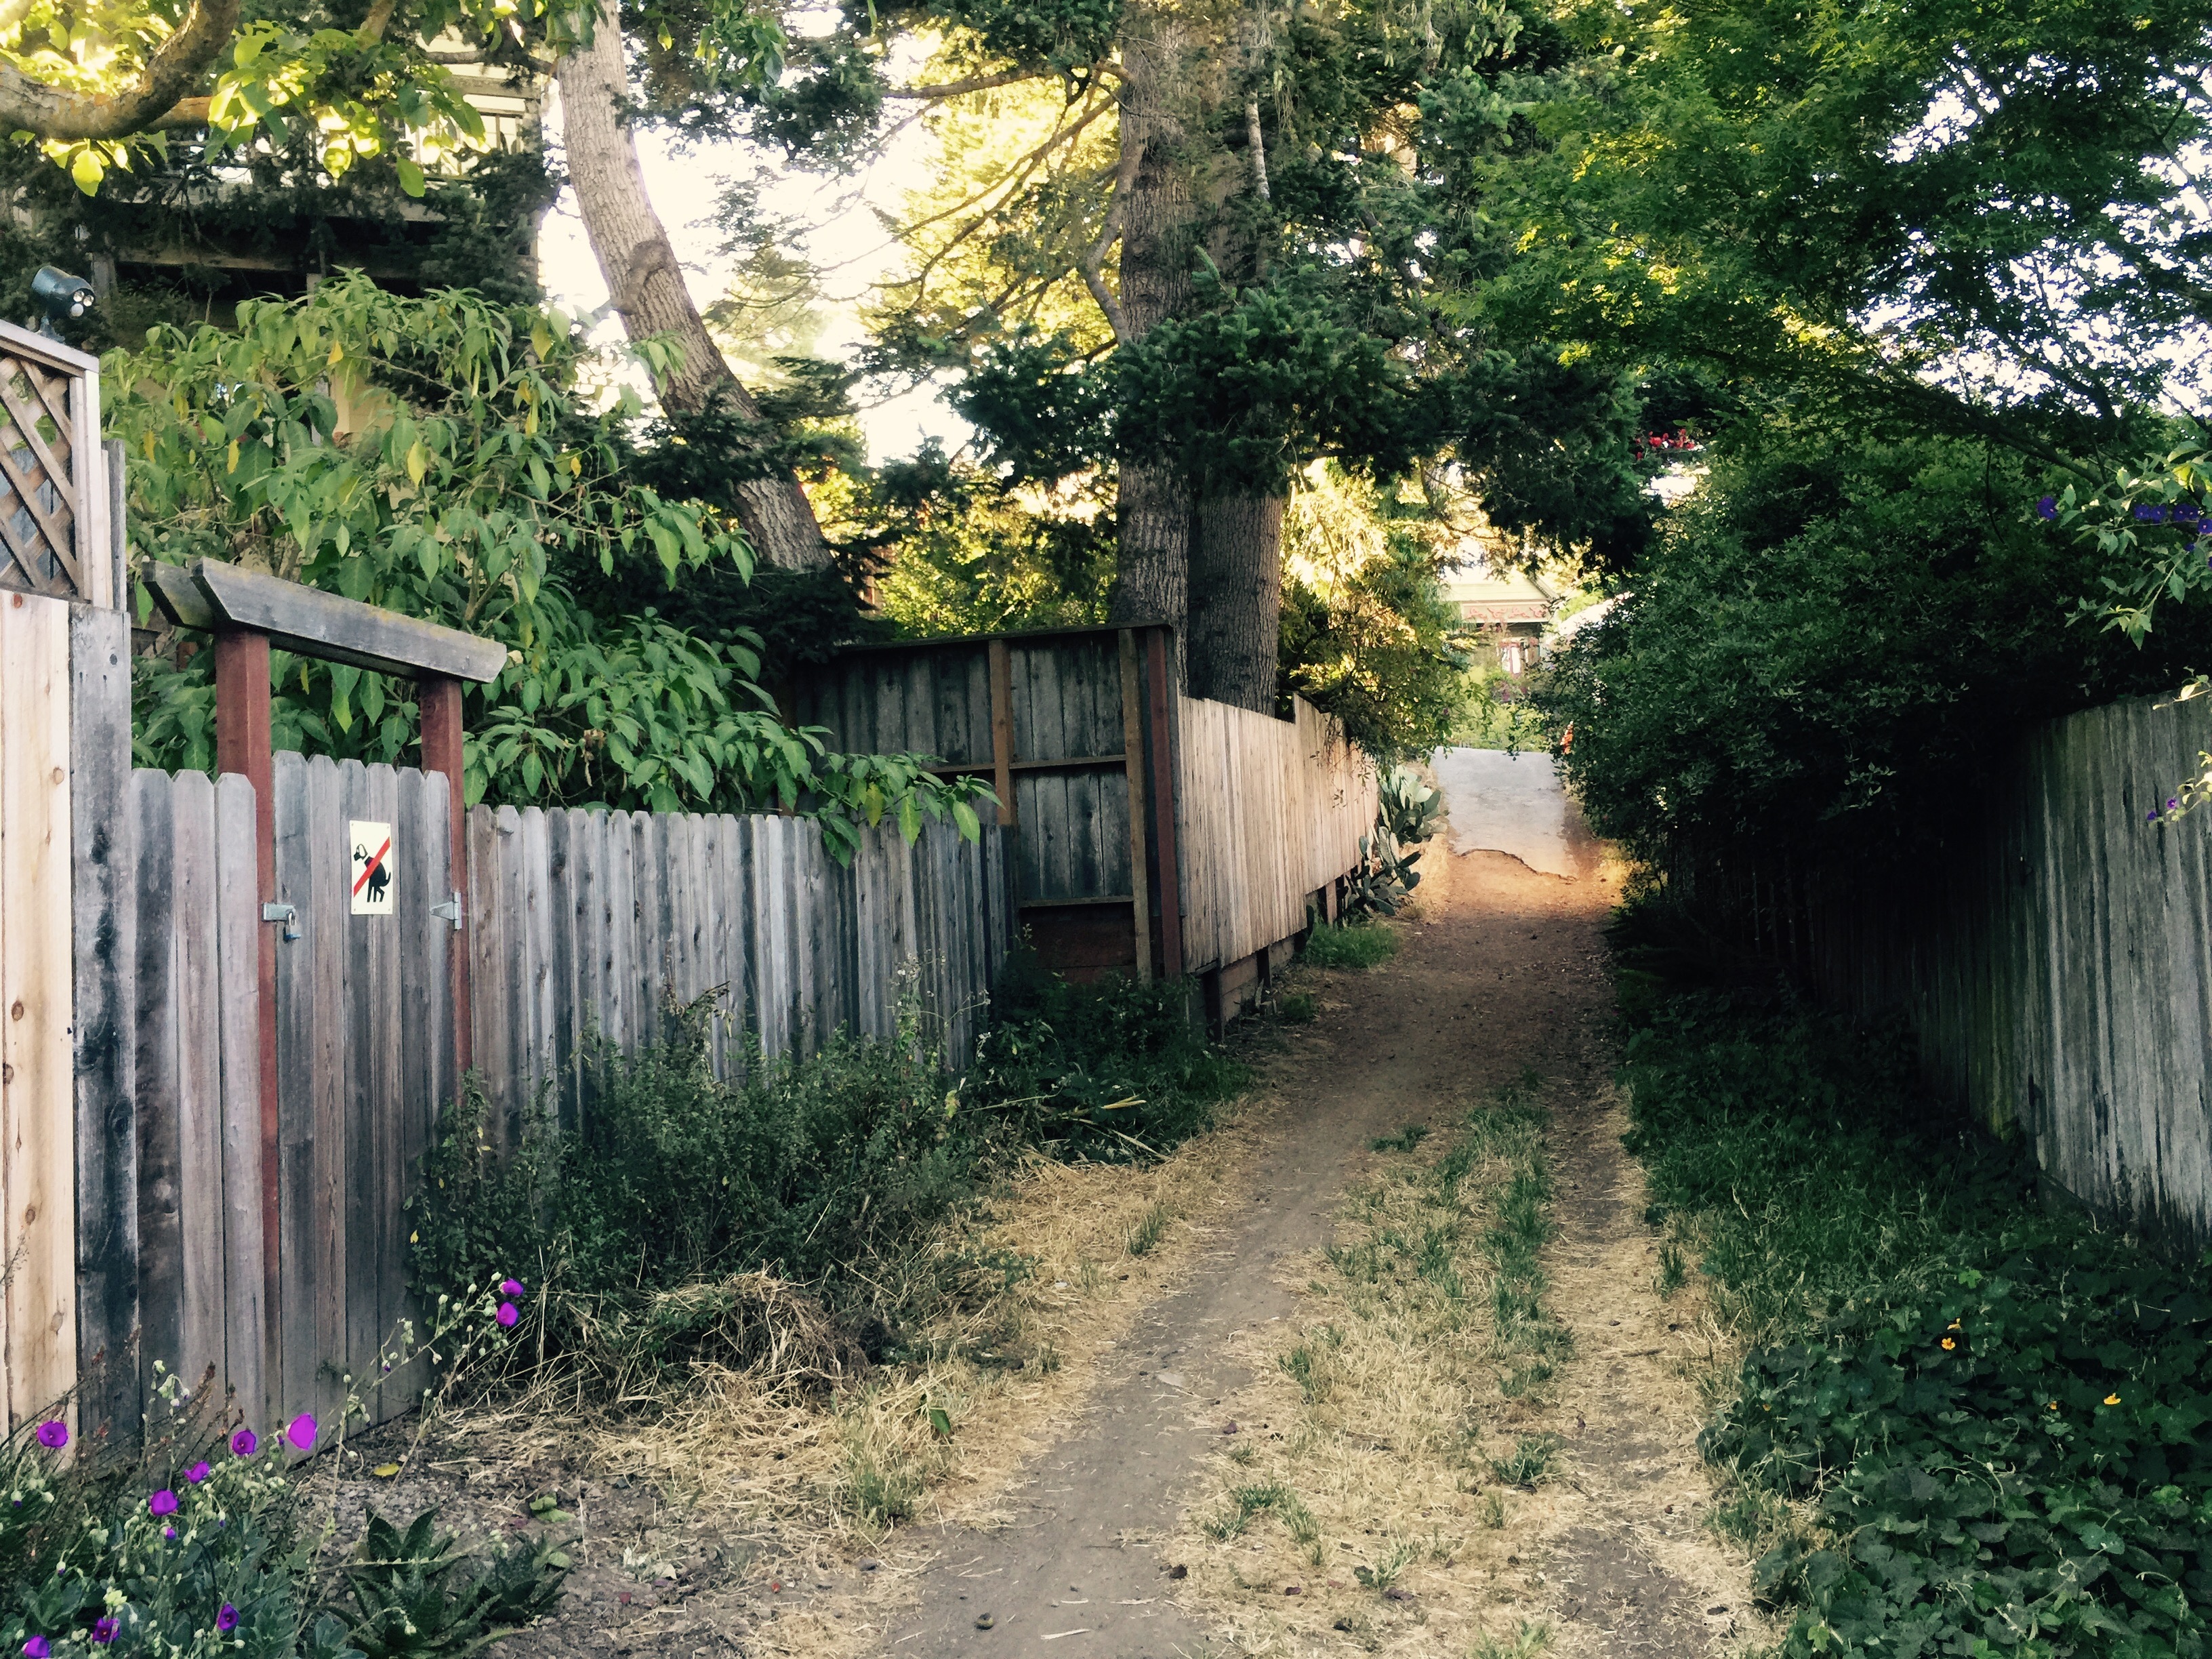 An alley near Glen Park